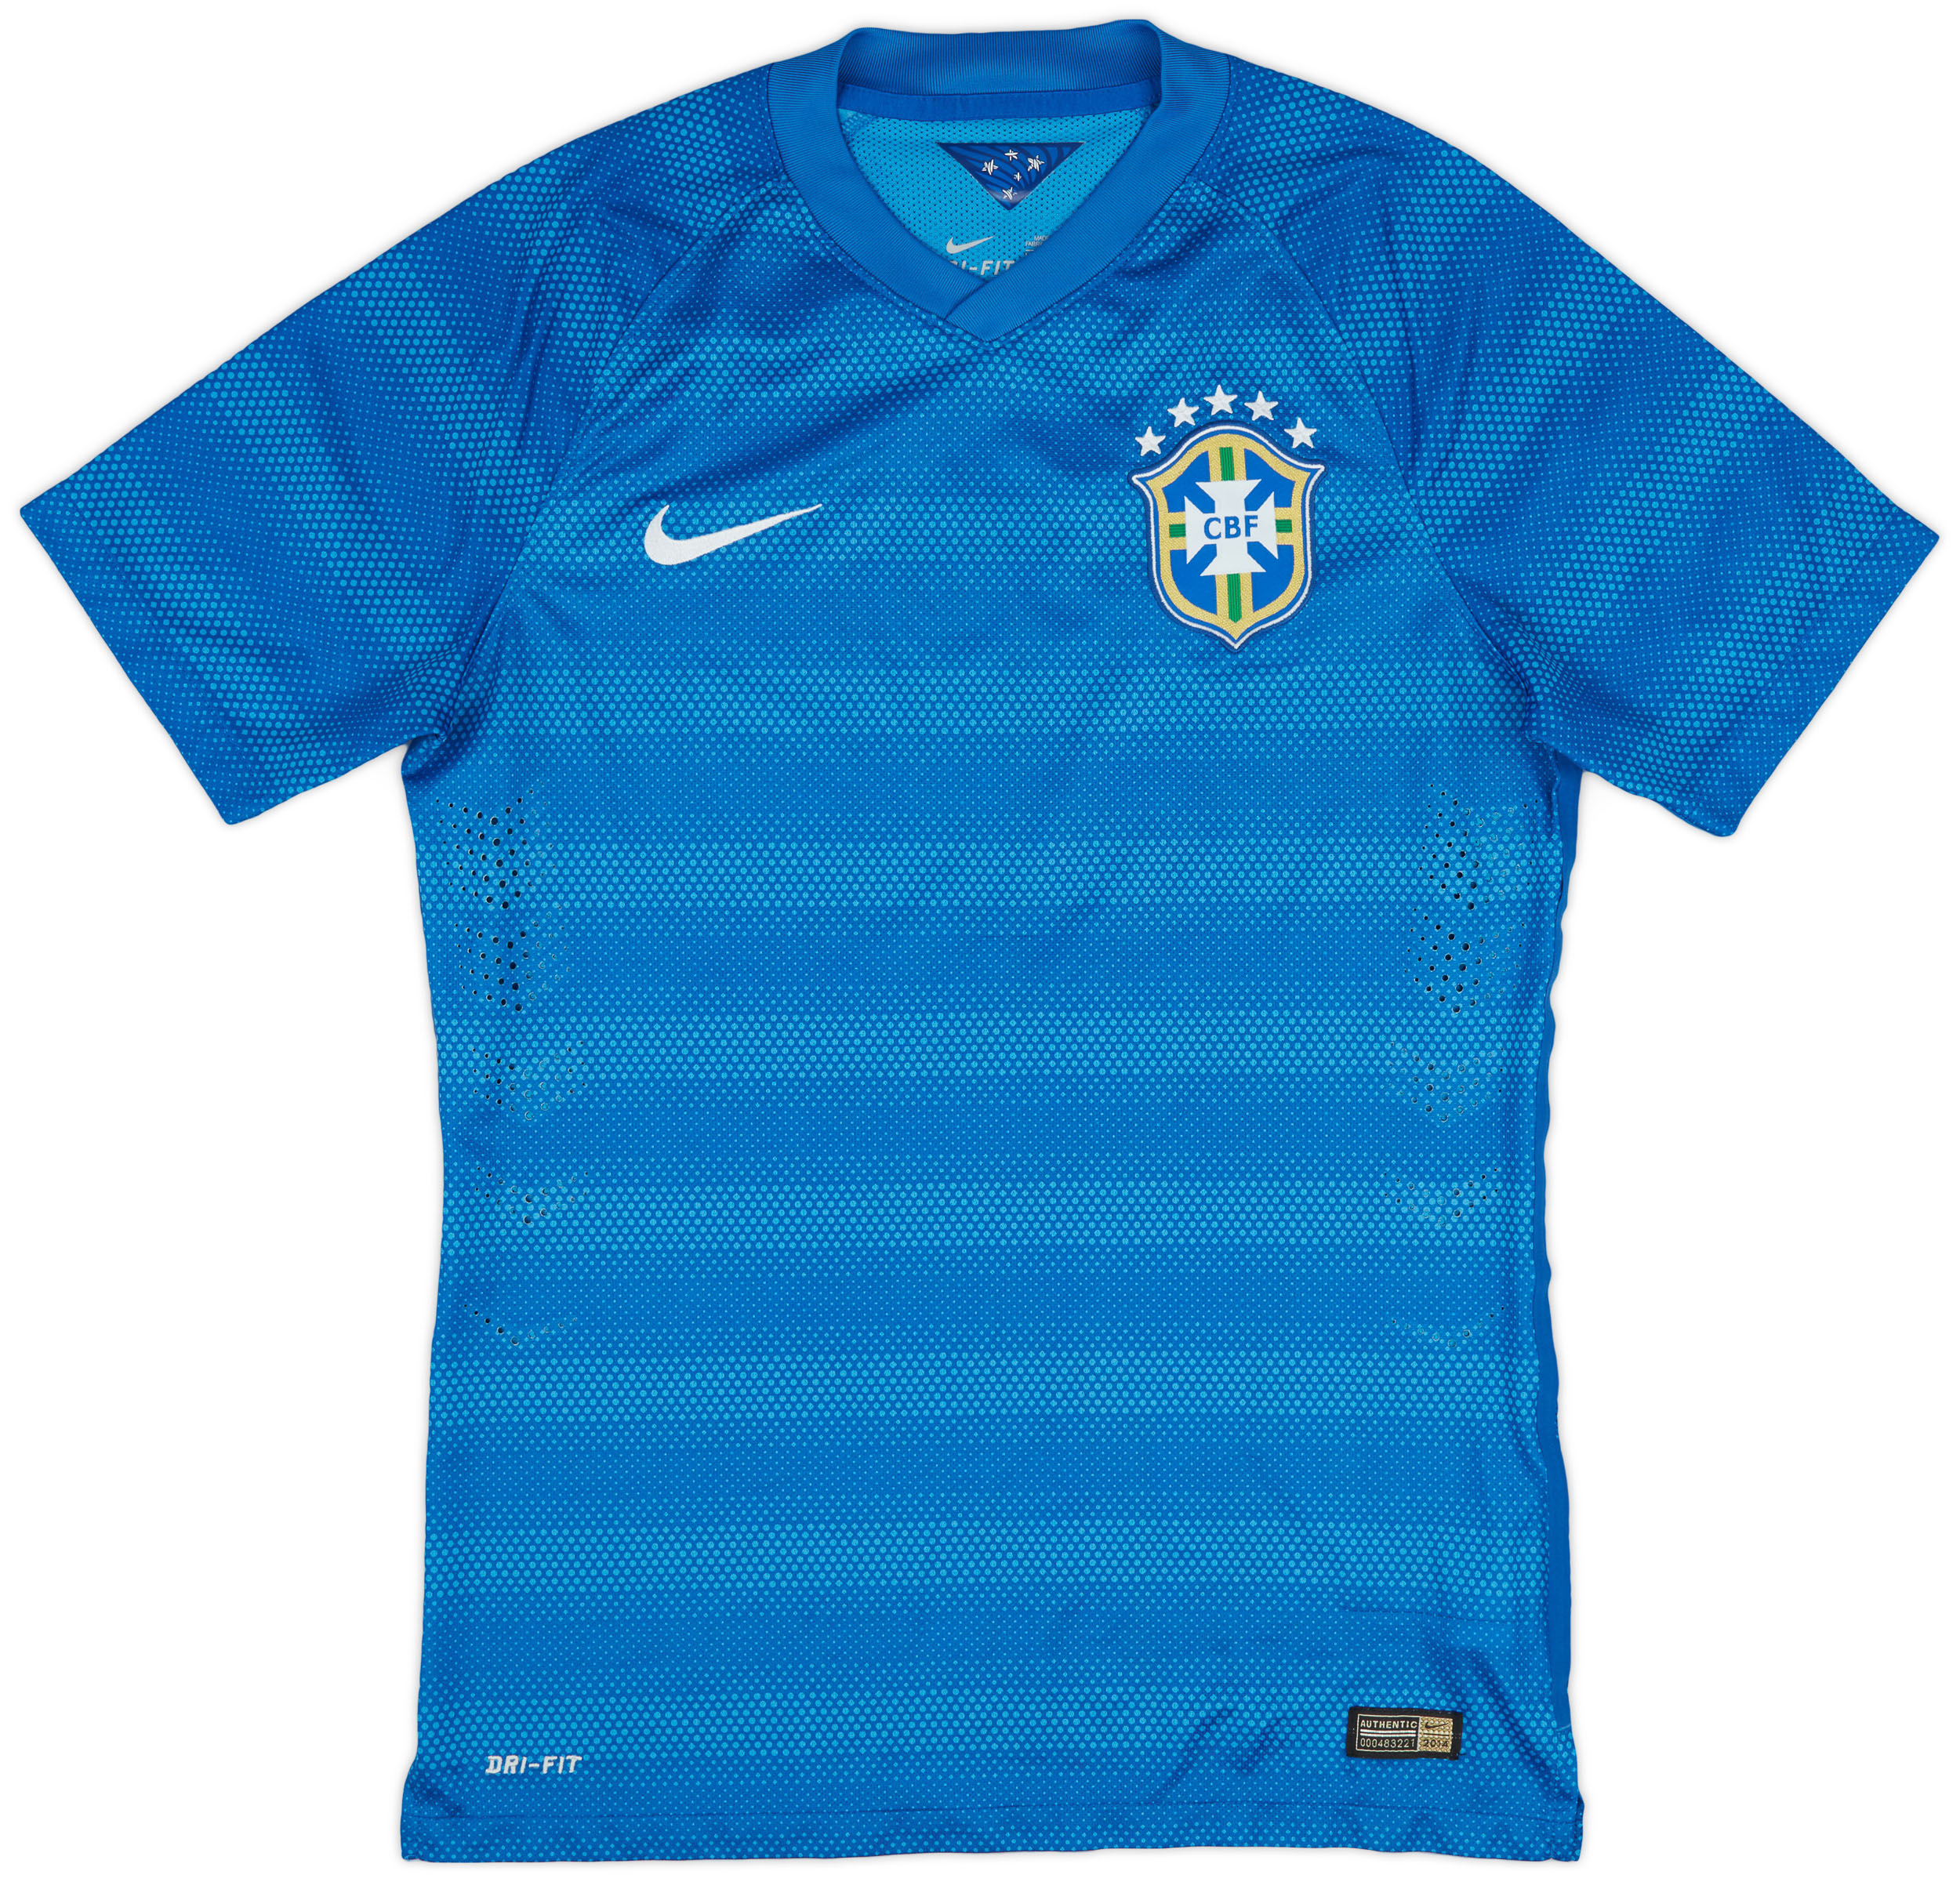 2014-15 Brazil Player Issue Away Shirt - 10/10 - ()